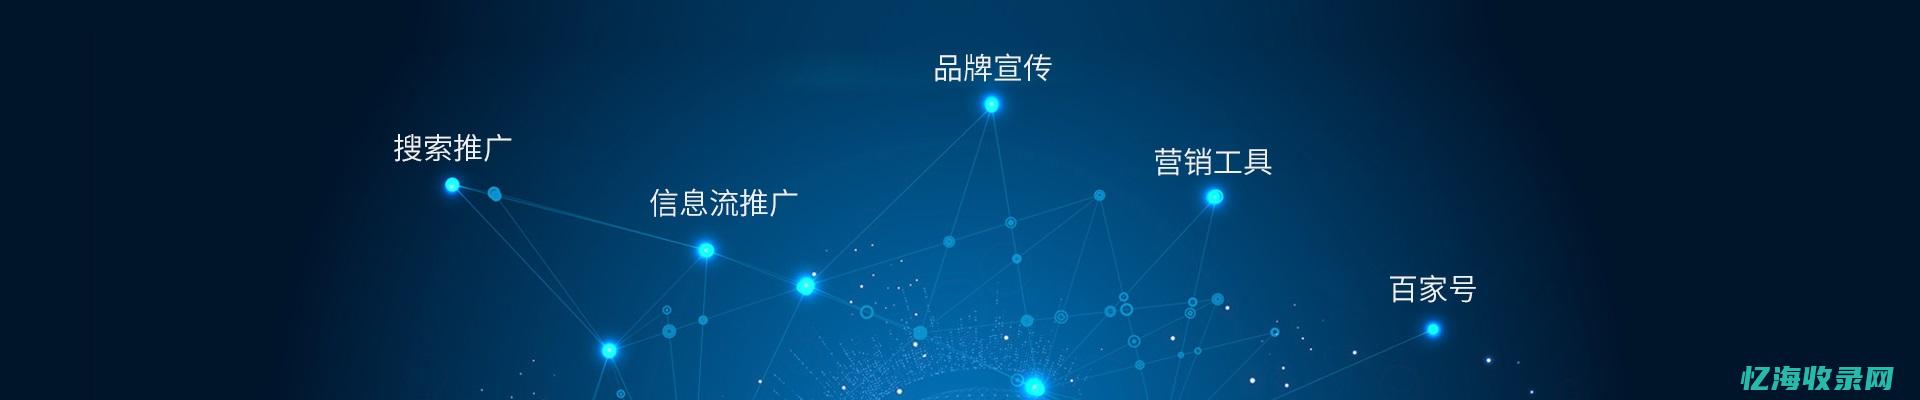 上海百度代理：让互联网为您的业务开拓更广阔的天地 (上海百度分公司电话销售)